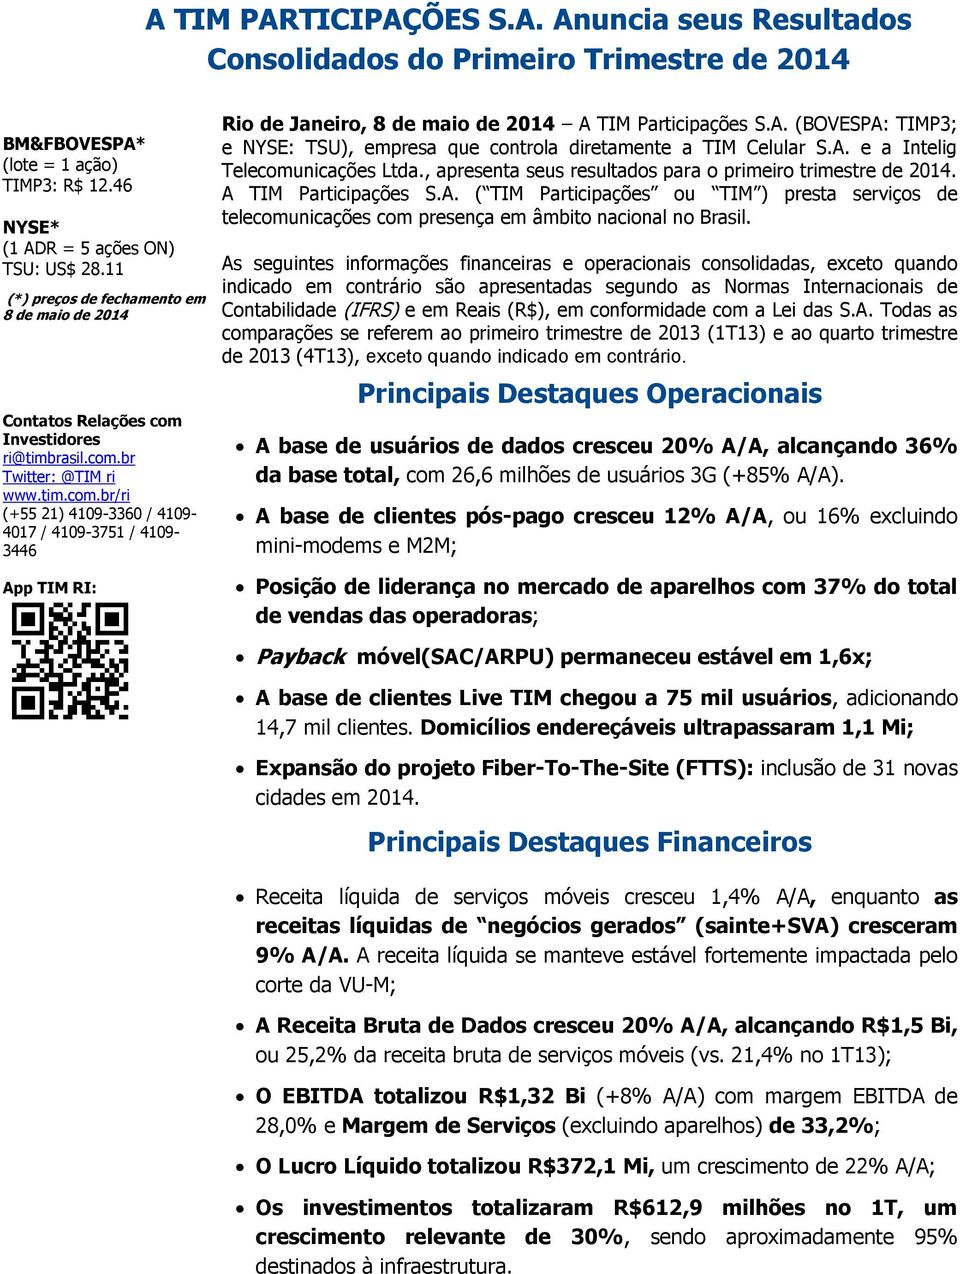 A. (BOVESPA: TIMP3; e NYSE: TSU), empresa que controla diretamente a TIM Celular S.A. e a Intelig Telecomunicações Ltda., apresenta seus resultados para o primeiro trimestre de 2014.